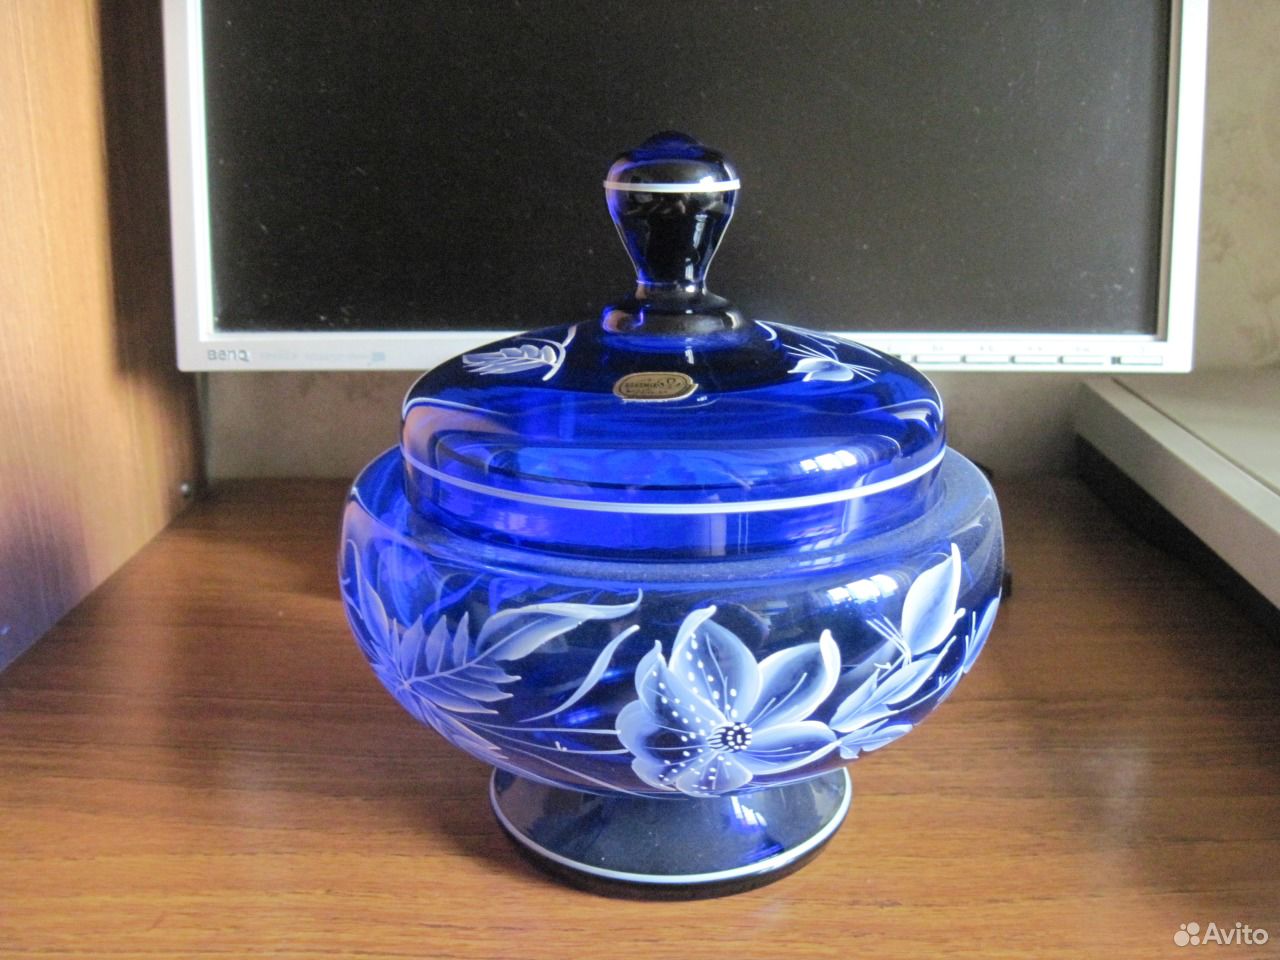 Купить на авито псков вазы. Ваза синее стекло. Ваза из синего стекла. Синяя ваза богемское стекло. Синяя ваза с крышкой.